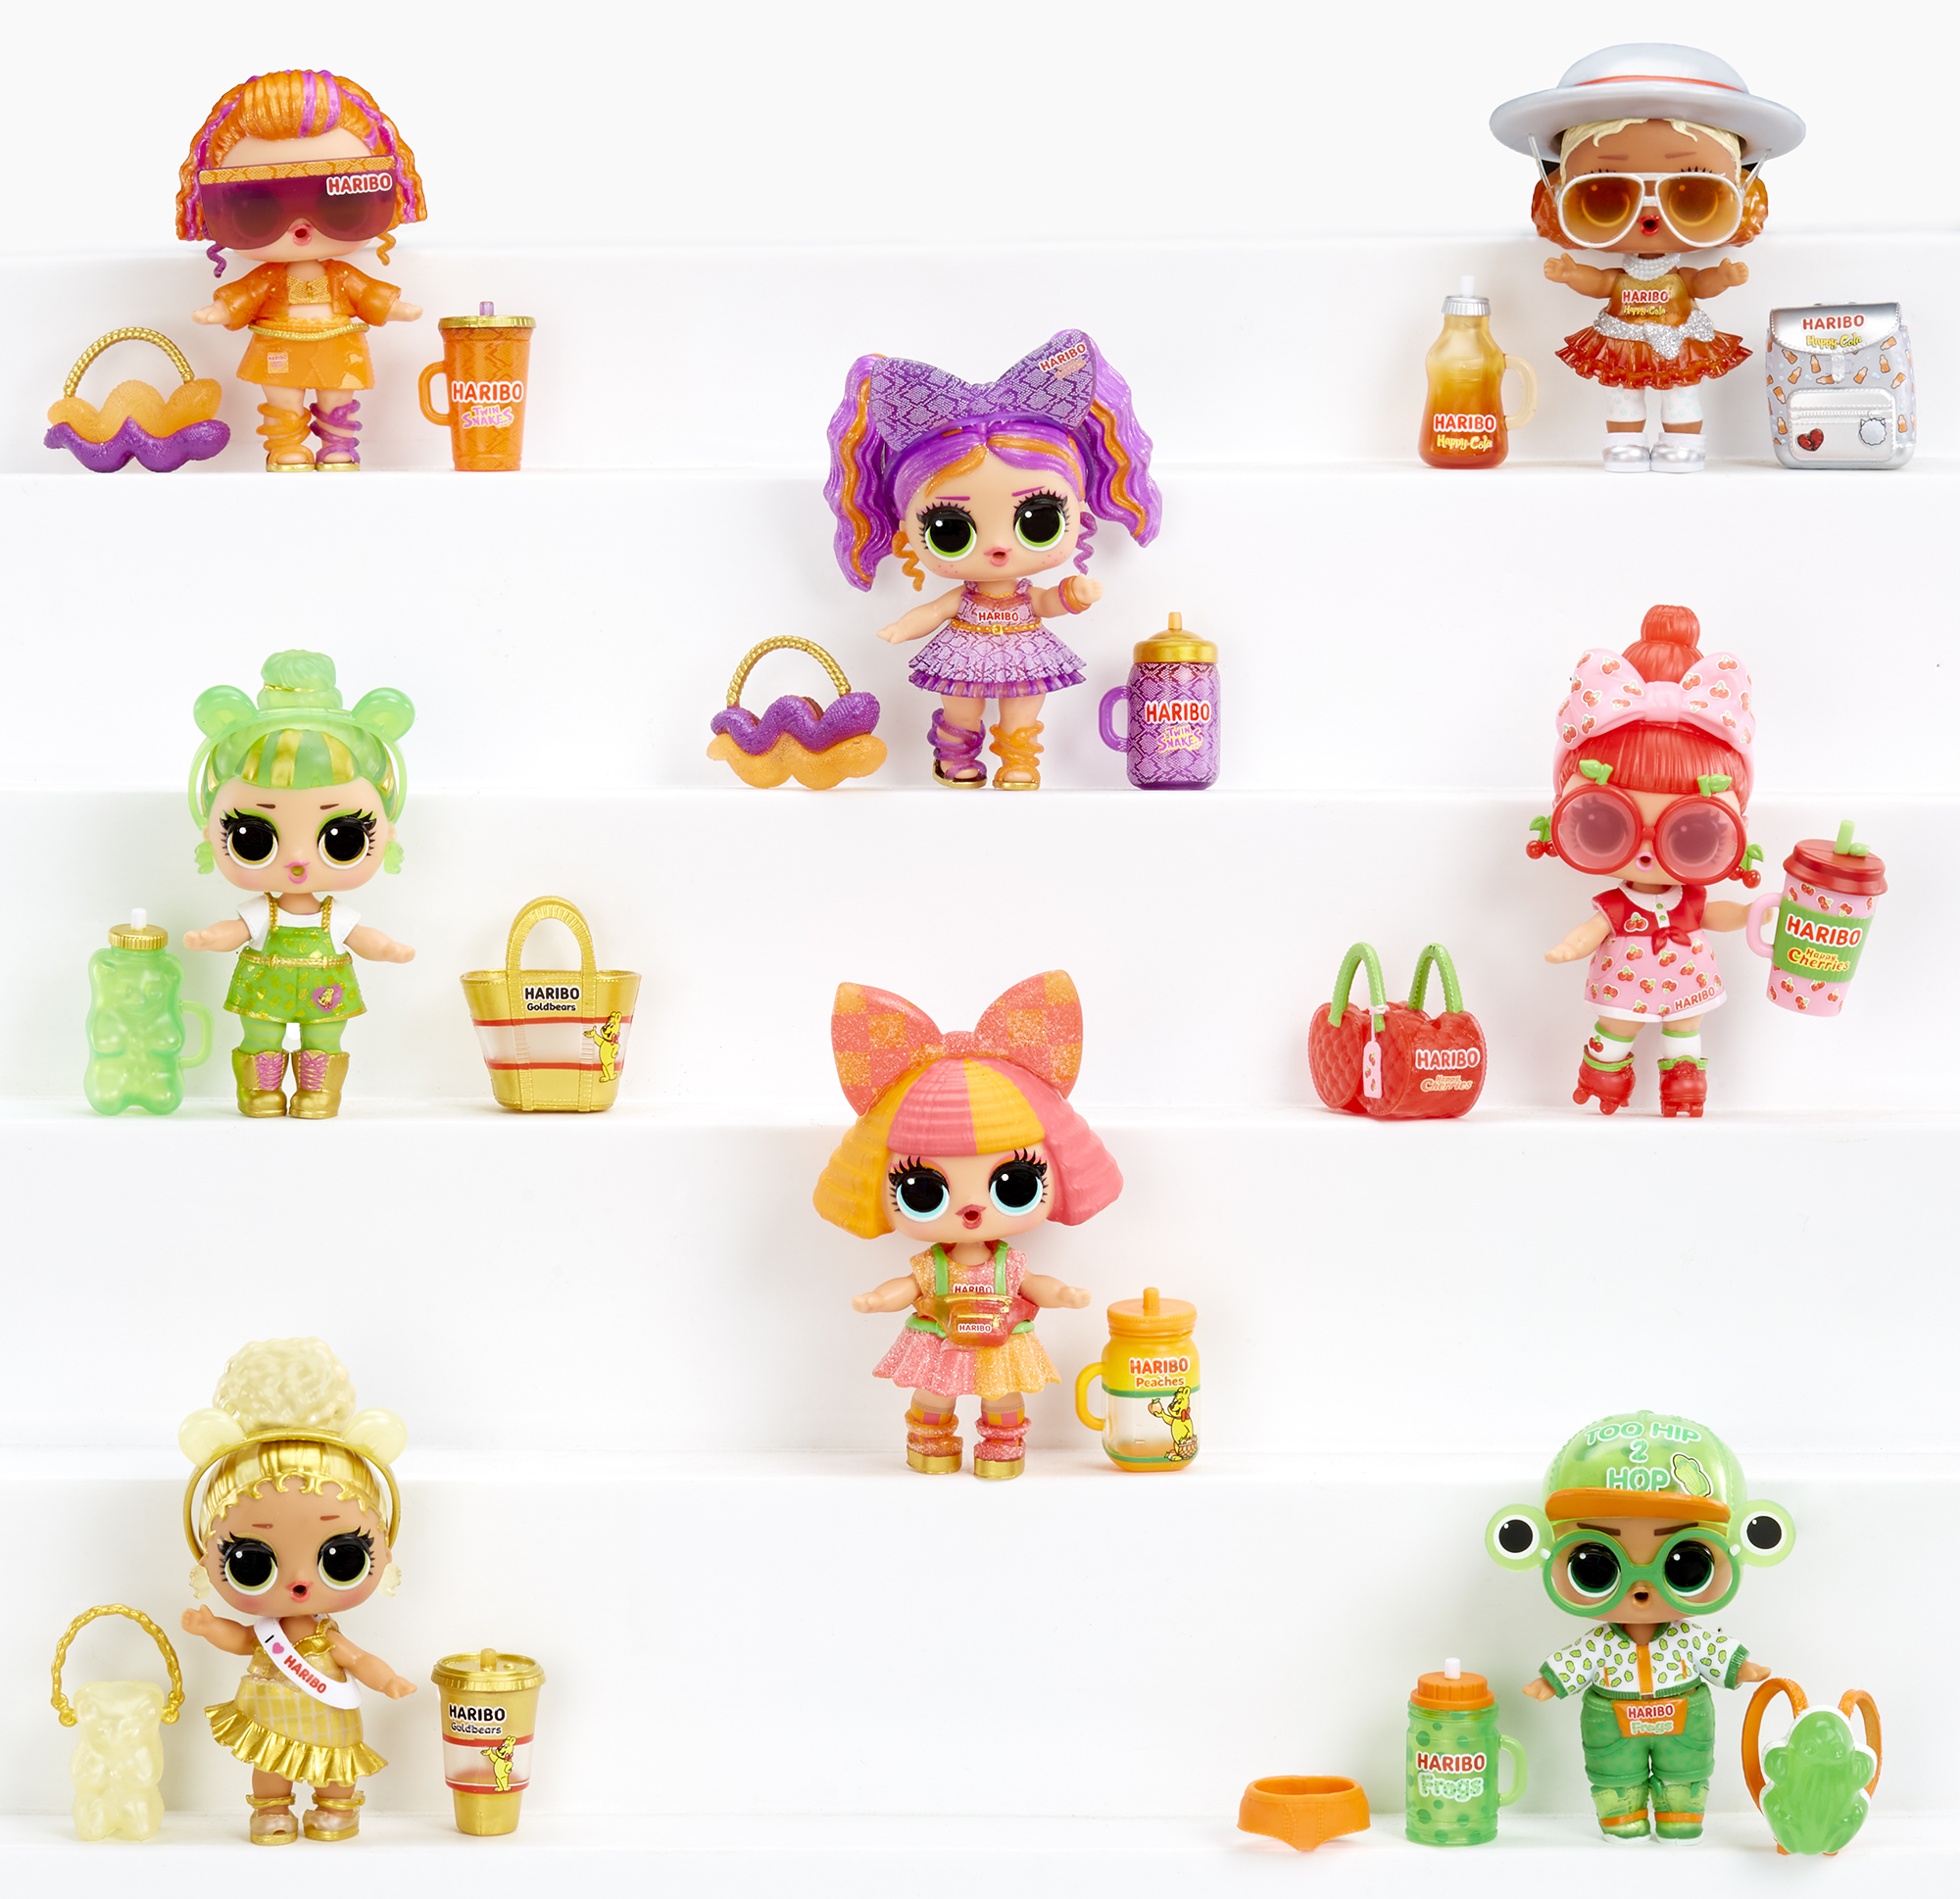 Lol surprise loves mini sweets serie x haribo -  include 7 sorprese, accessori e bambola a tema caramelle - LOL